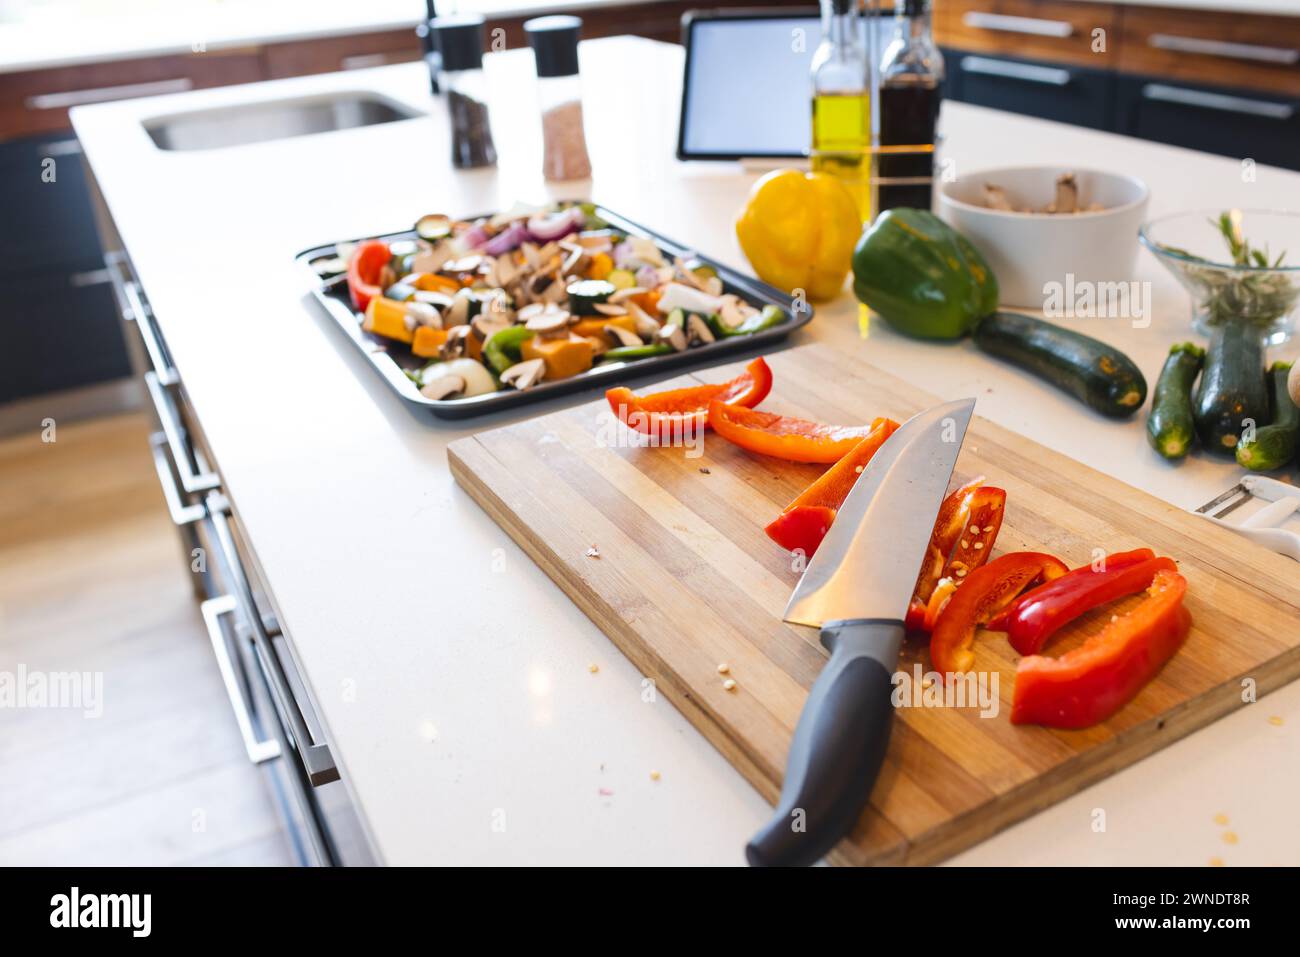 Un comptoir de cuisine expose des légumes hachés et un couteau sur une planche à découper Banque D'Images